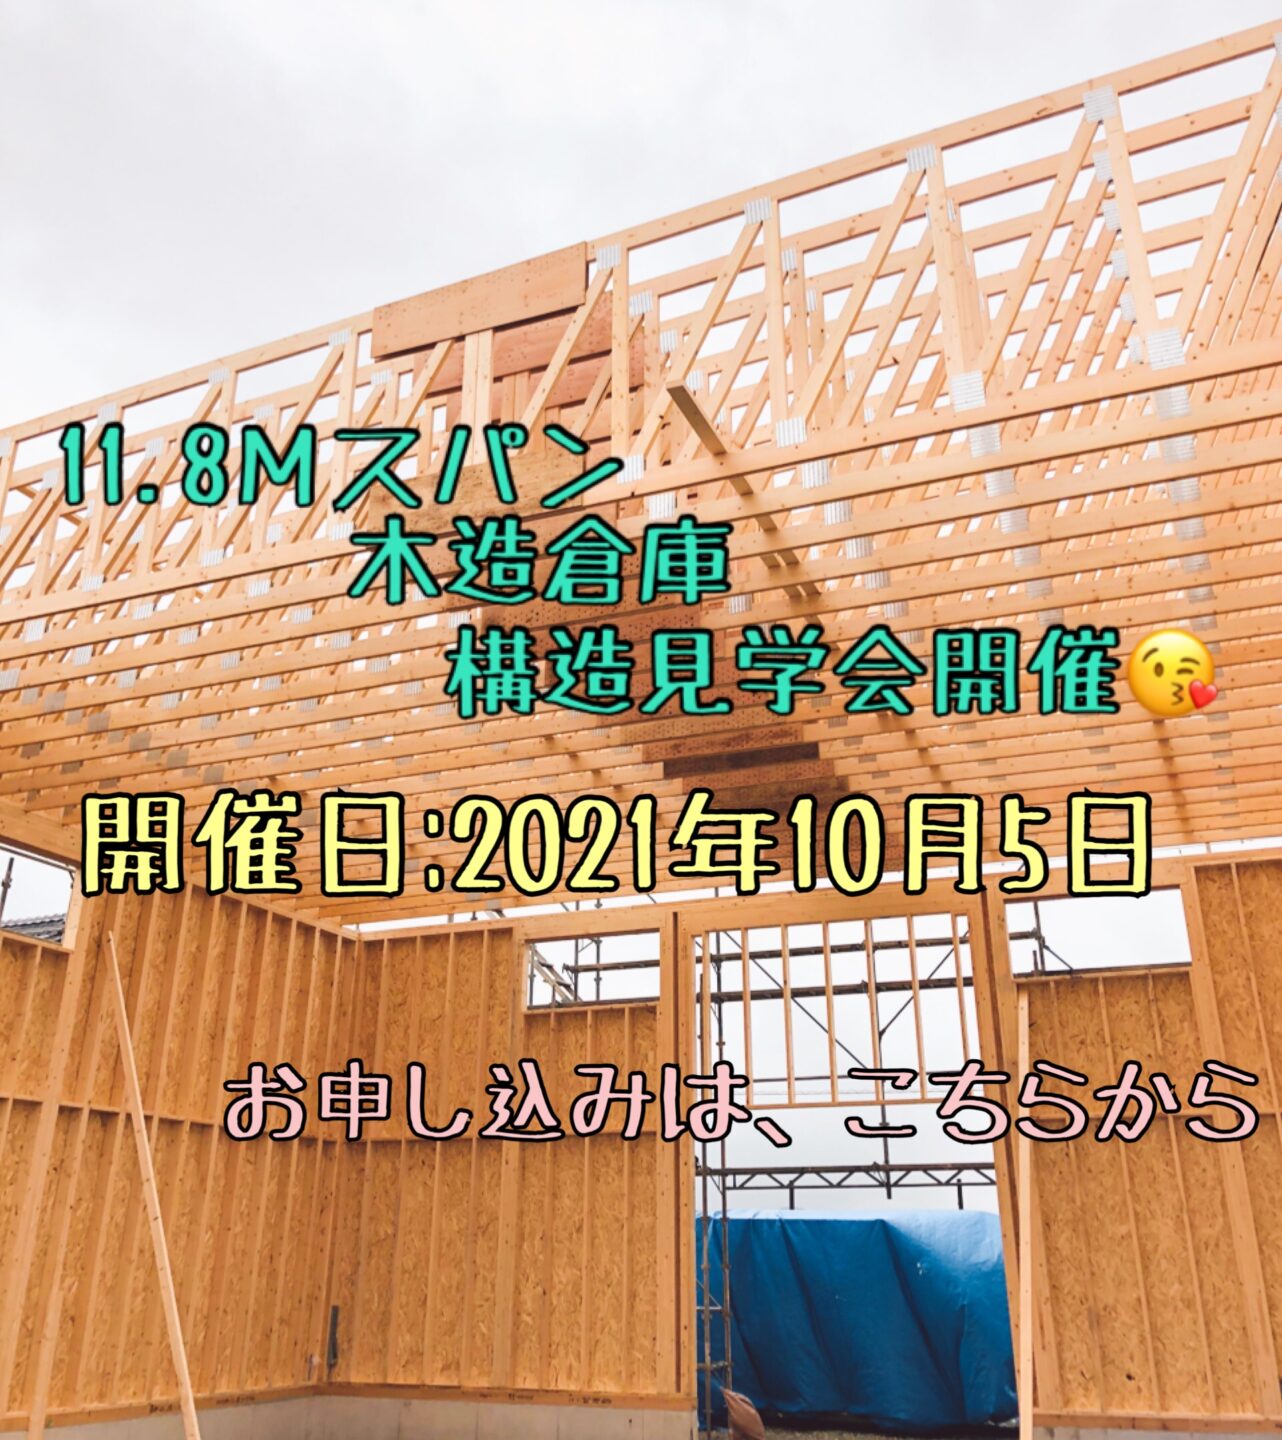 【11.8mスパン農業用木造倉庫】構造見学会のご案内　